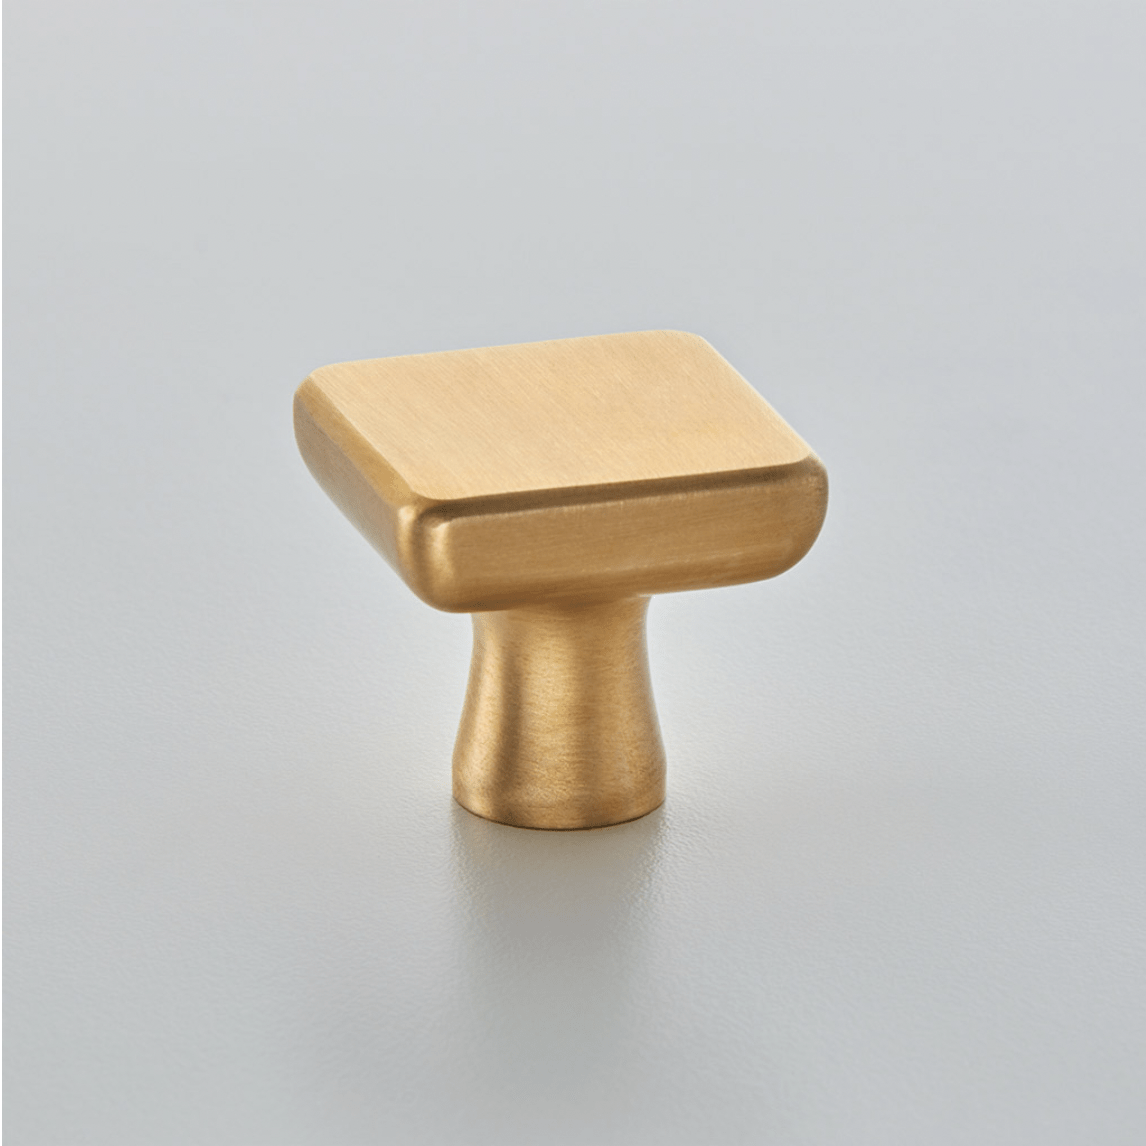 plaza cabinet knob